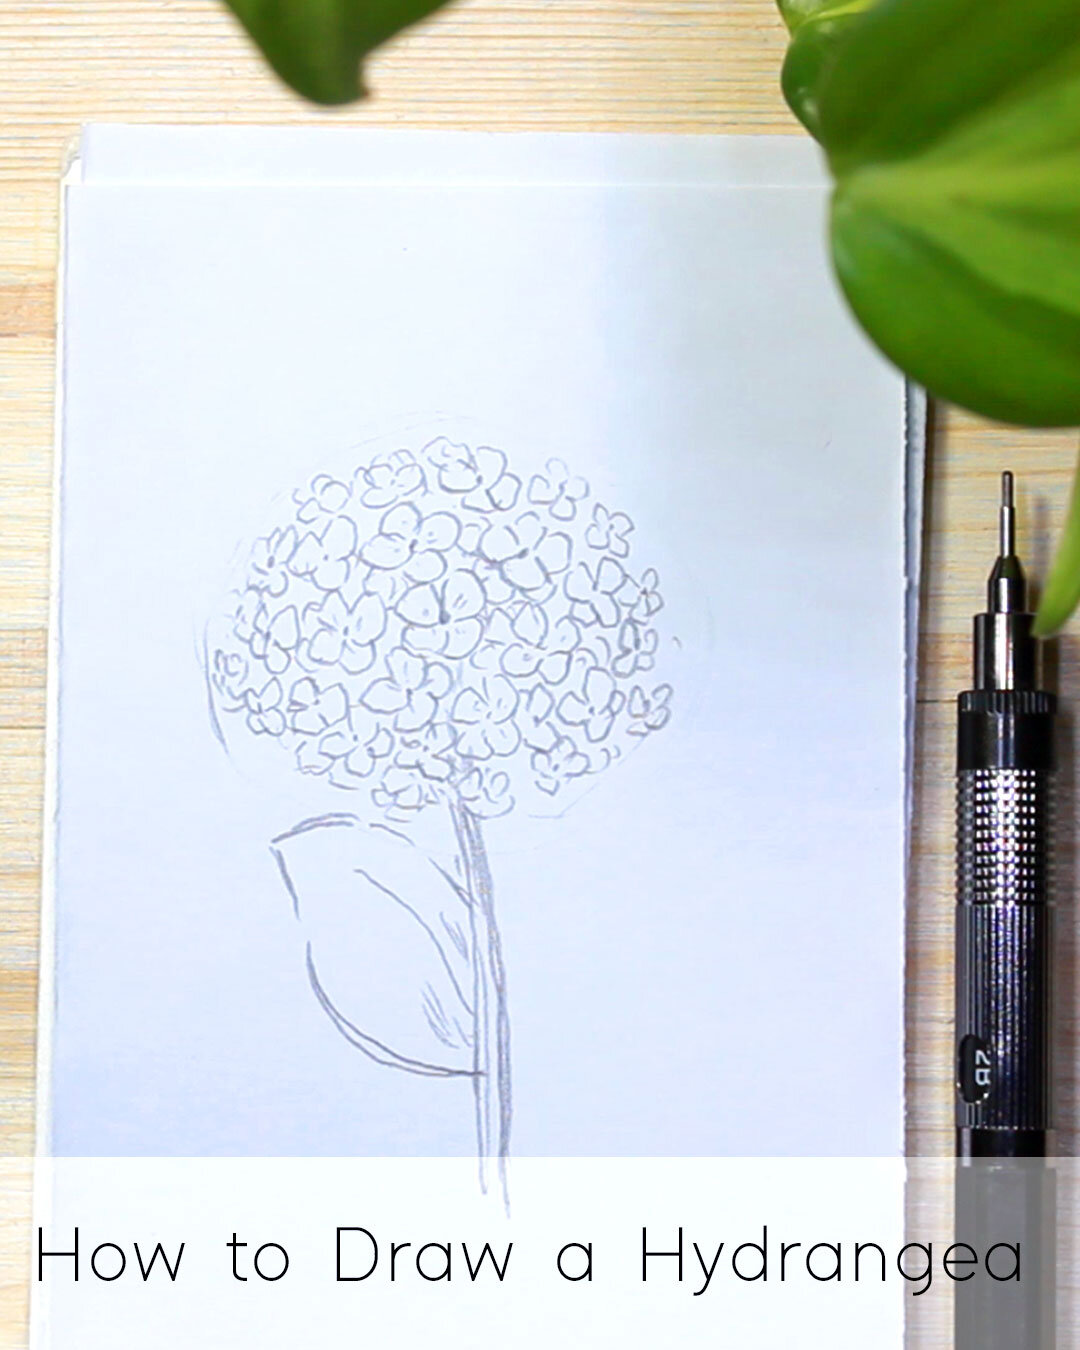 How to Draw a Hydrangea